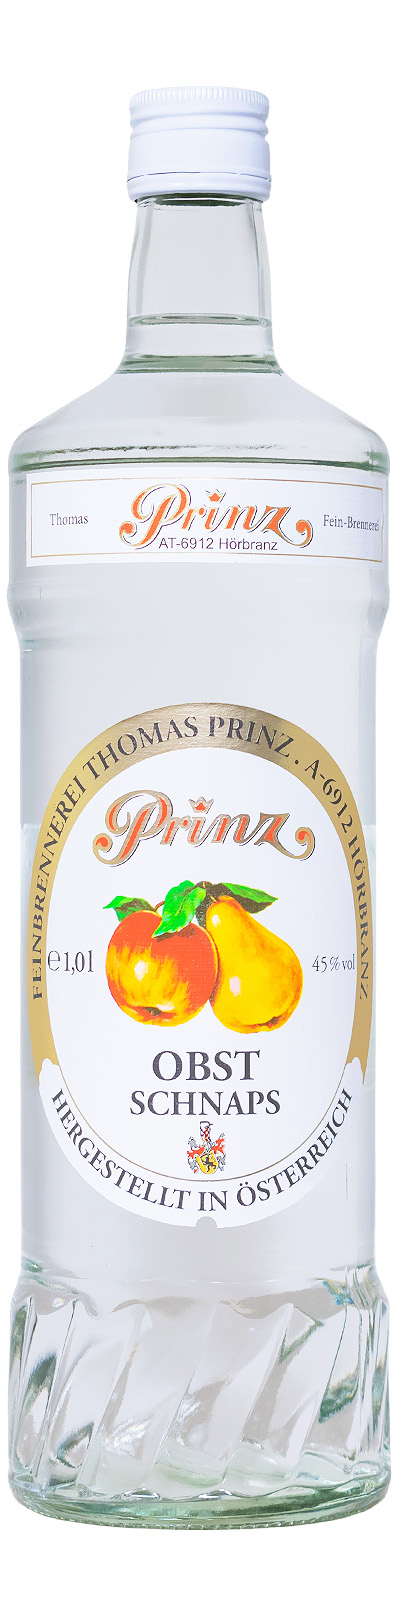 Prinz Obst Schnaps - 1 Liter 45% vol